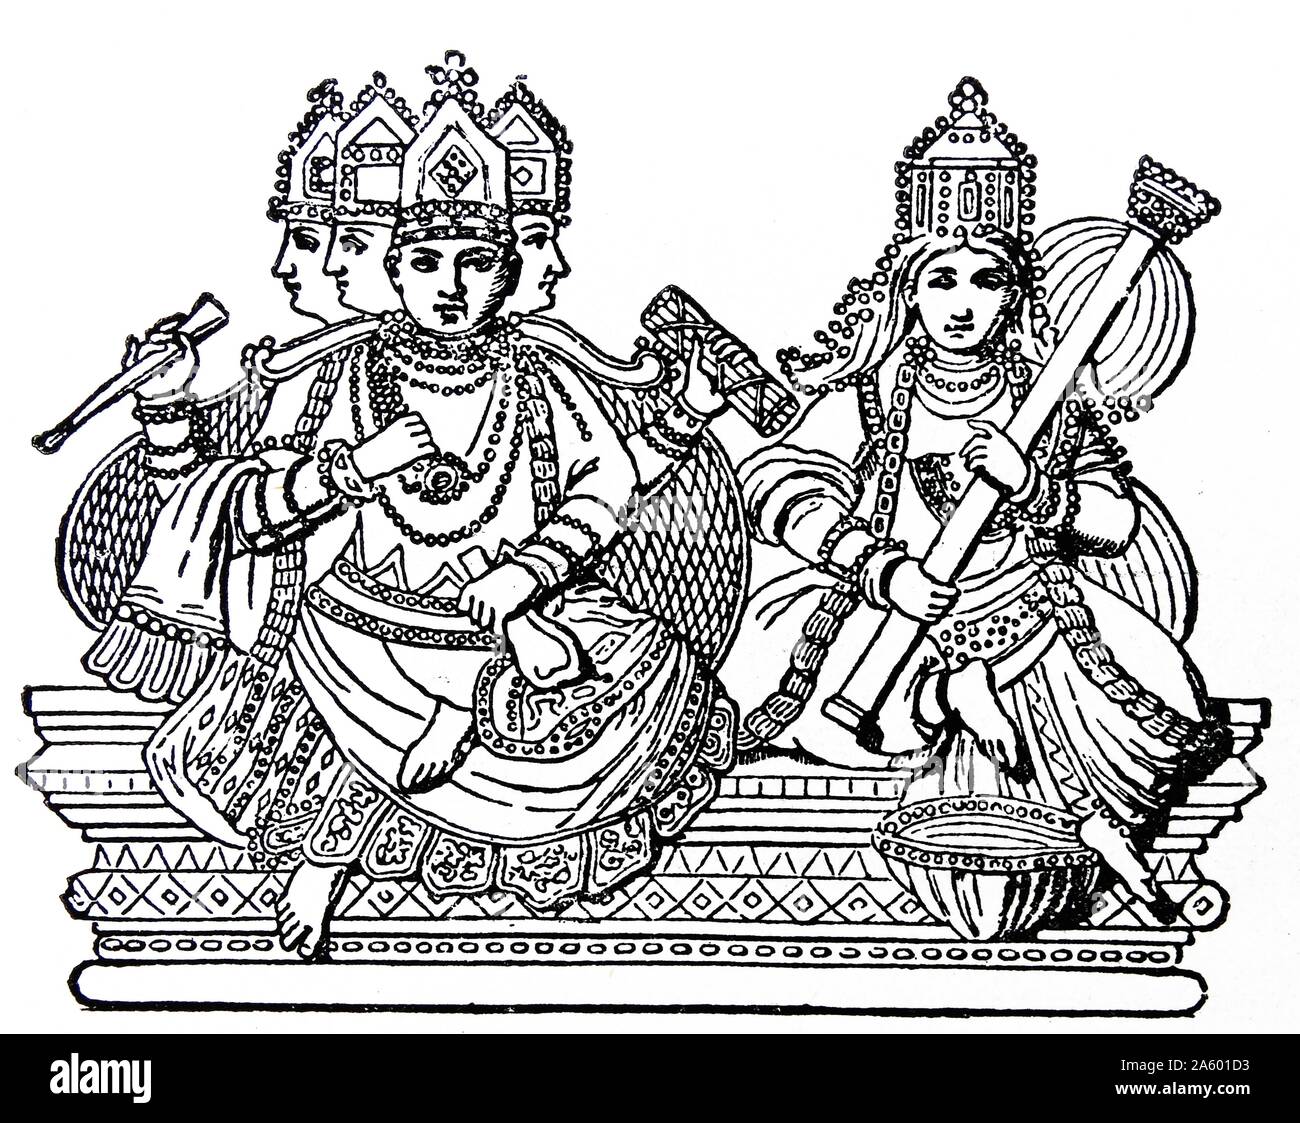 L'Hindou Brahma (dieu créateur) représenté avec 4 faces, avec son épouse la déesse hindoue Sarasvati de connaissances, de la musique et des arts de l'illustration du xixe siècle. Banque D'Images